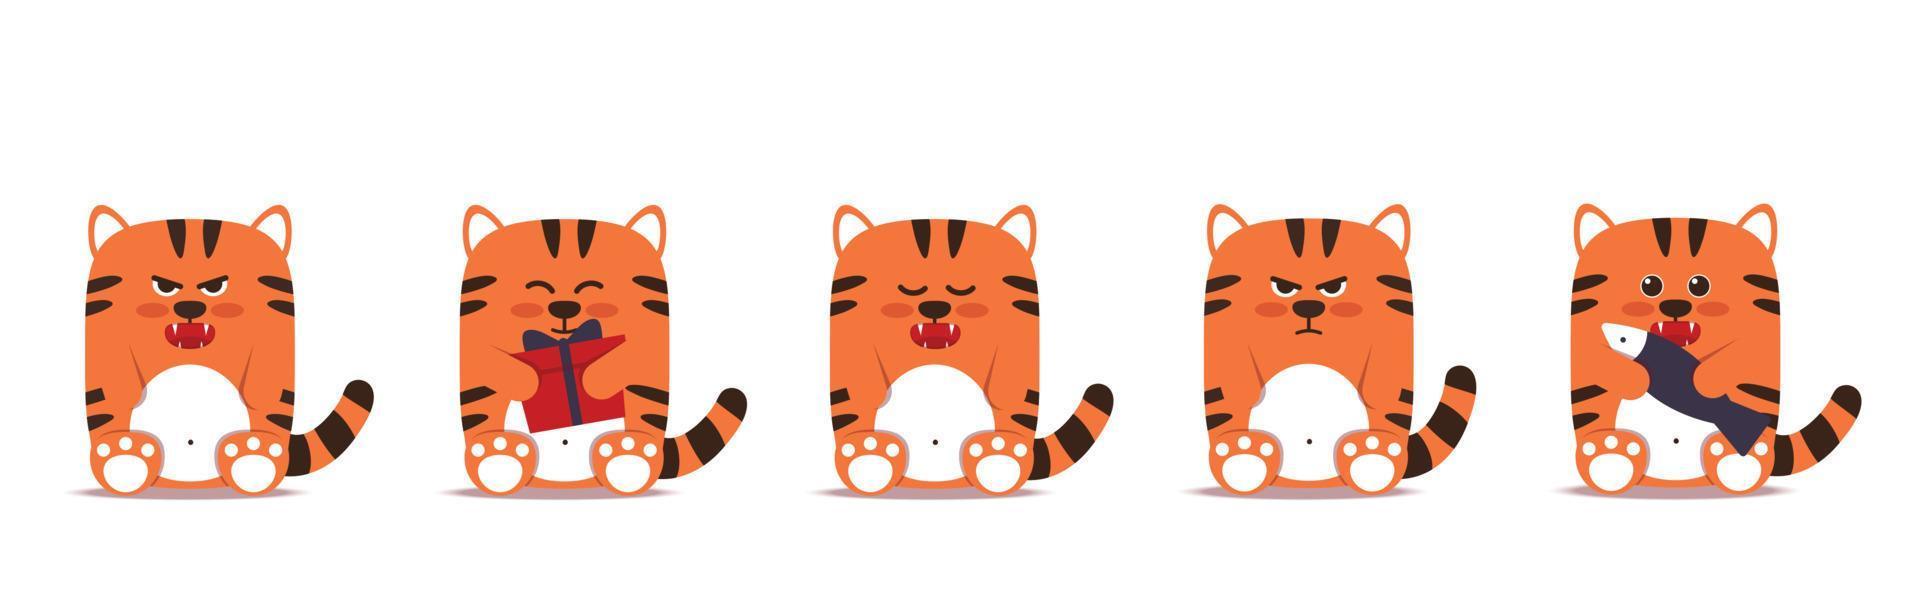 conjunto de gatinhos tigres pequenos em um estilo simples. símbolo animal para o ano novo chinês de 2022. tigre laranja mal-humorado e zangado senta-se com um peixe de caixa de presente. para um banner, decoração infantil. ilustração vetorial. vetor